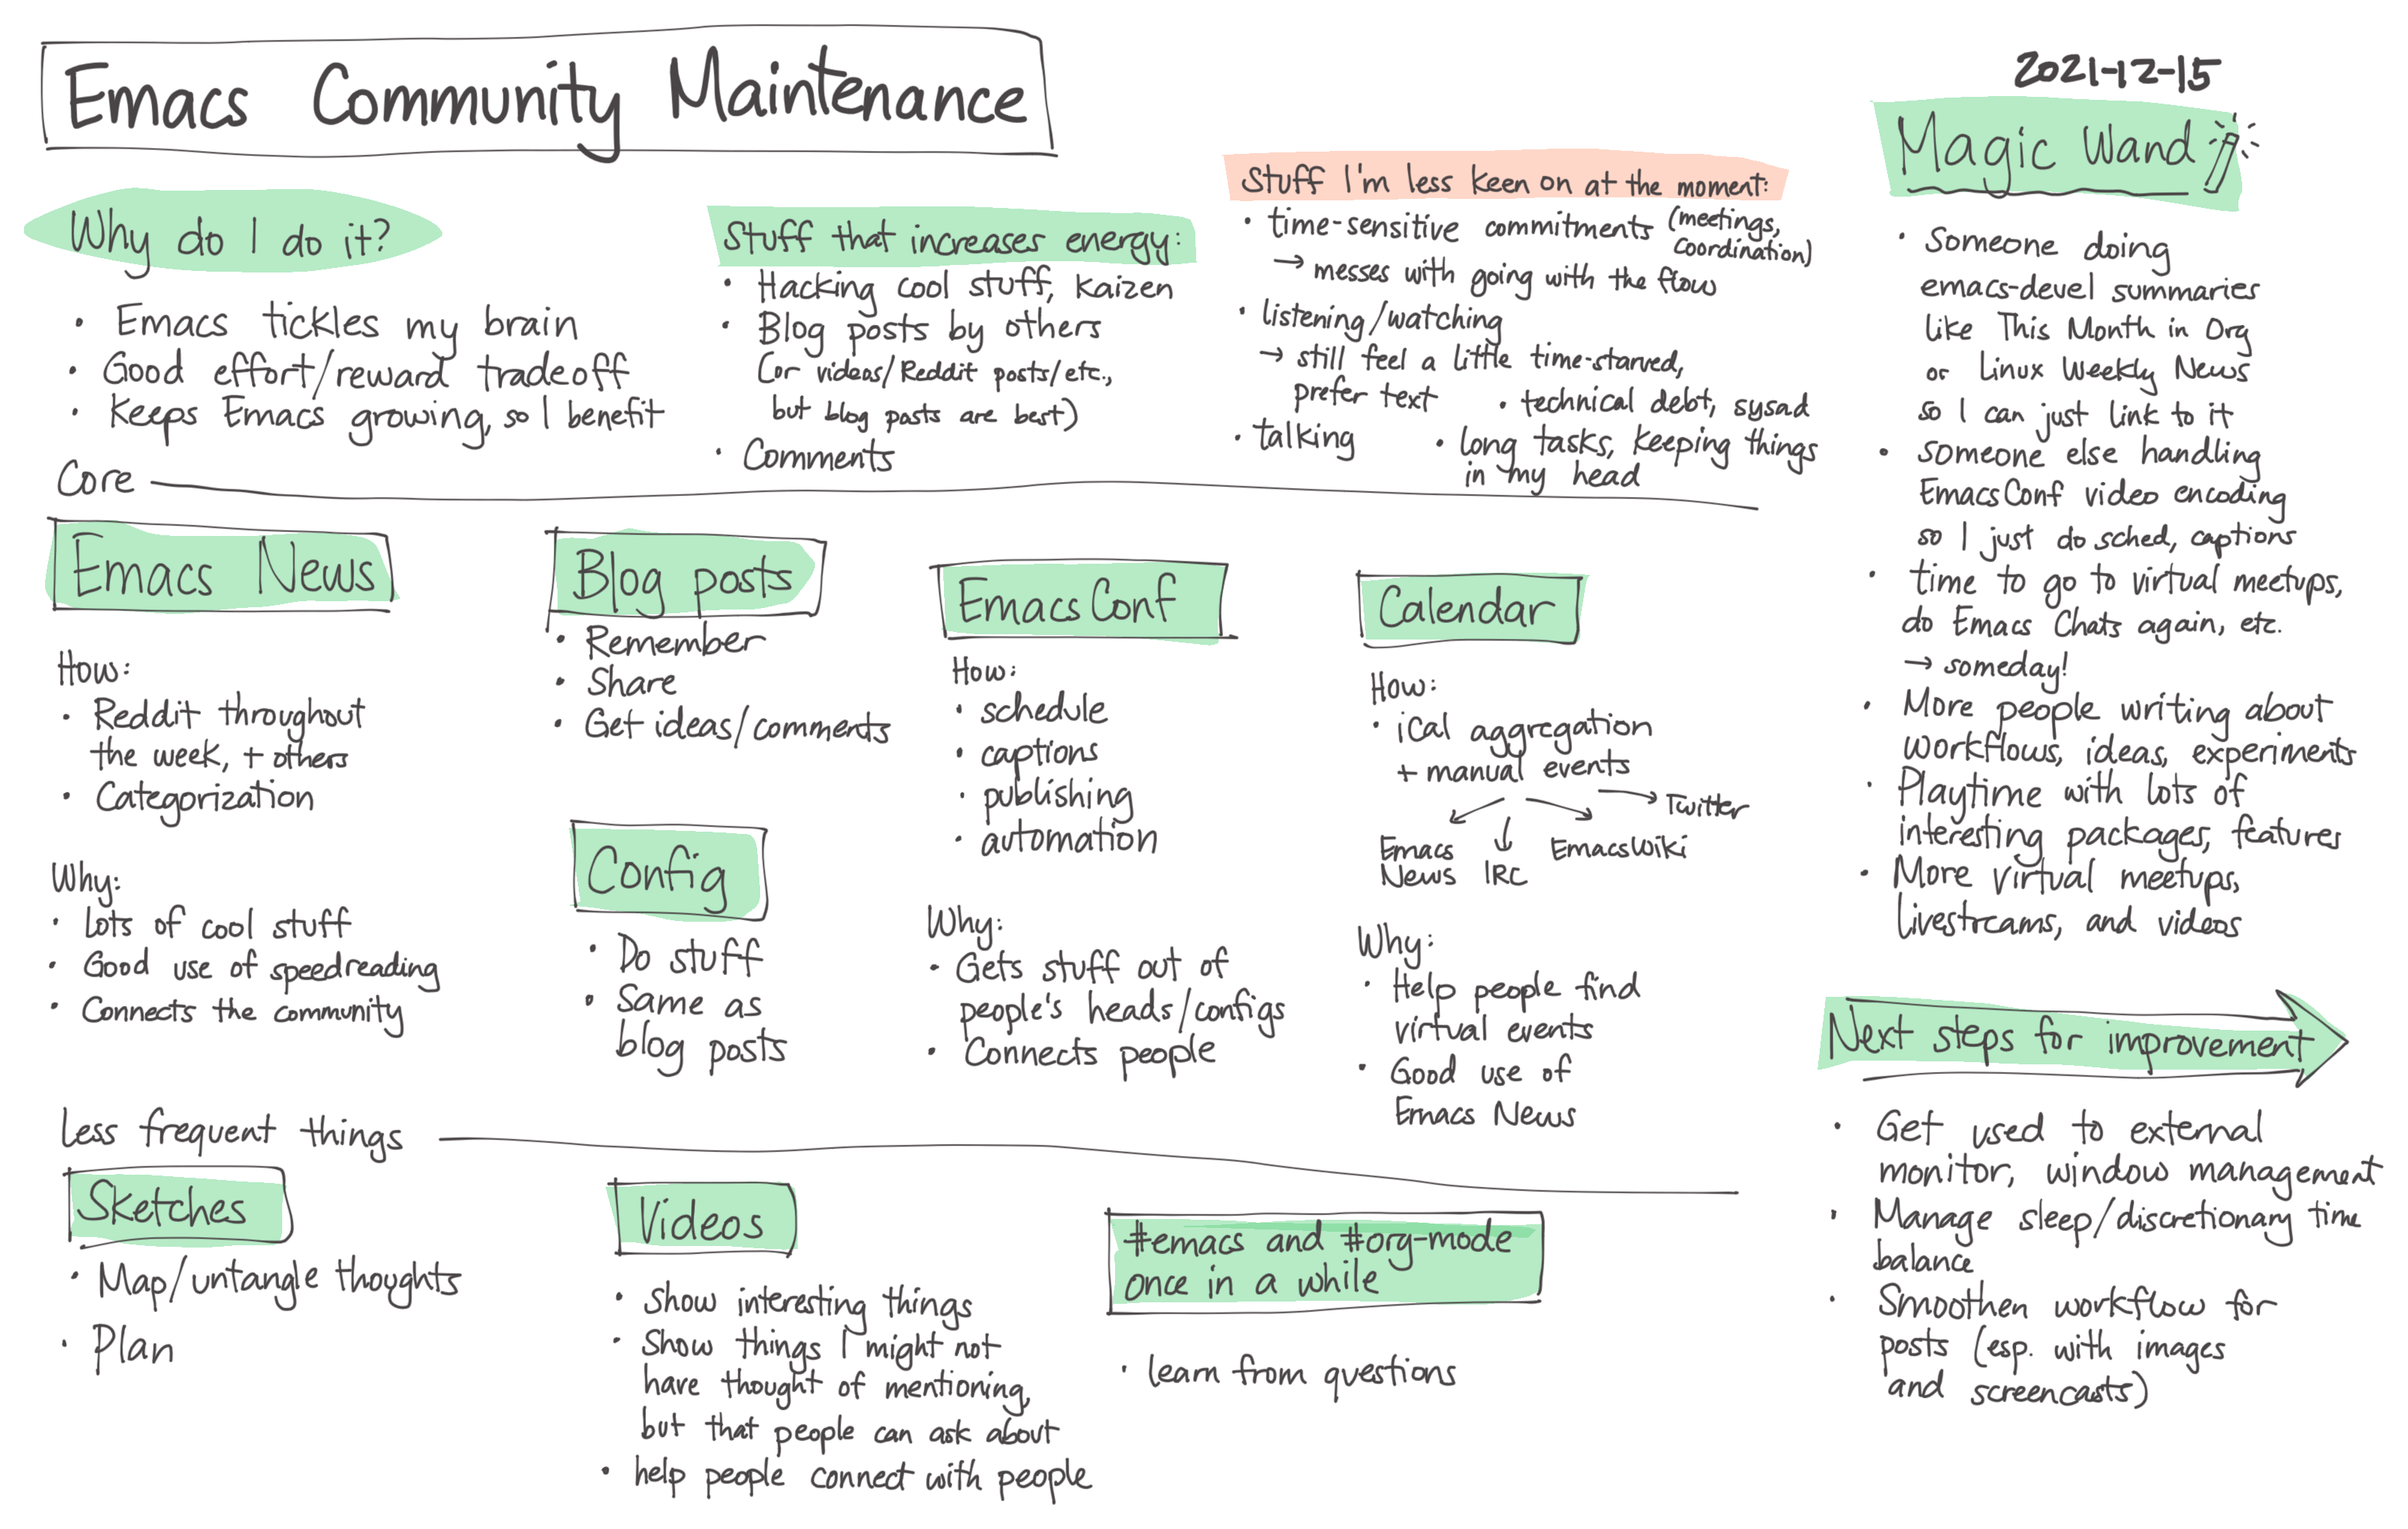 2021-12-15 Emacs community maintenance